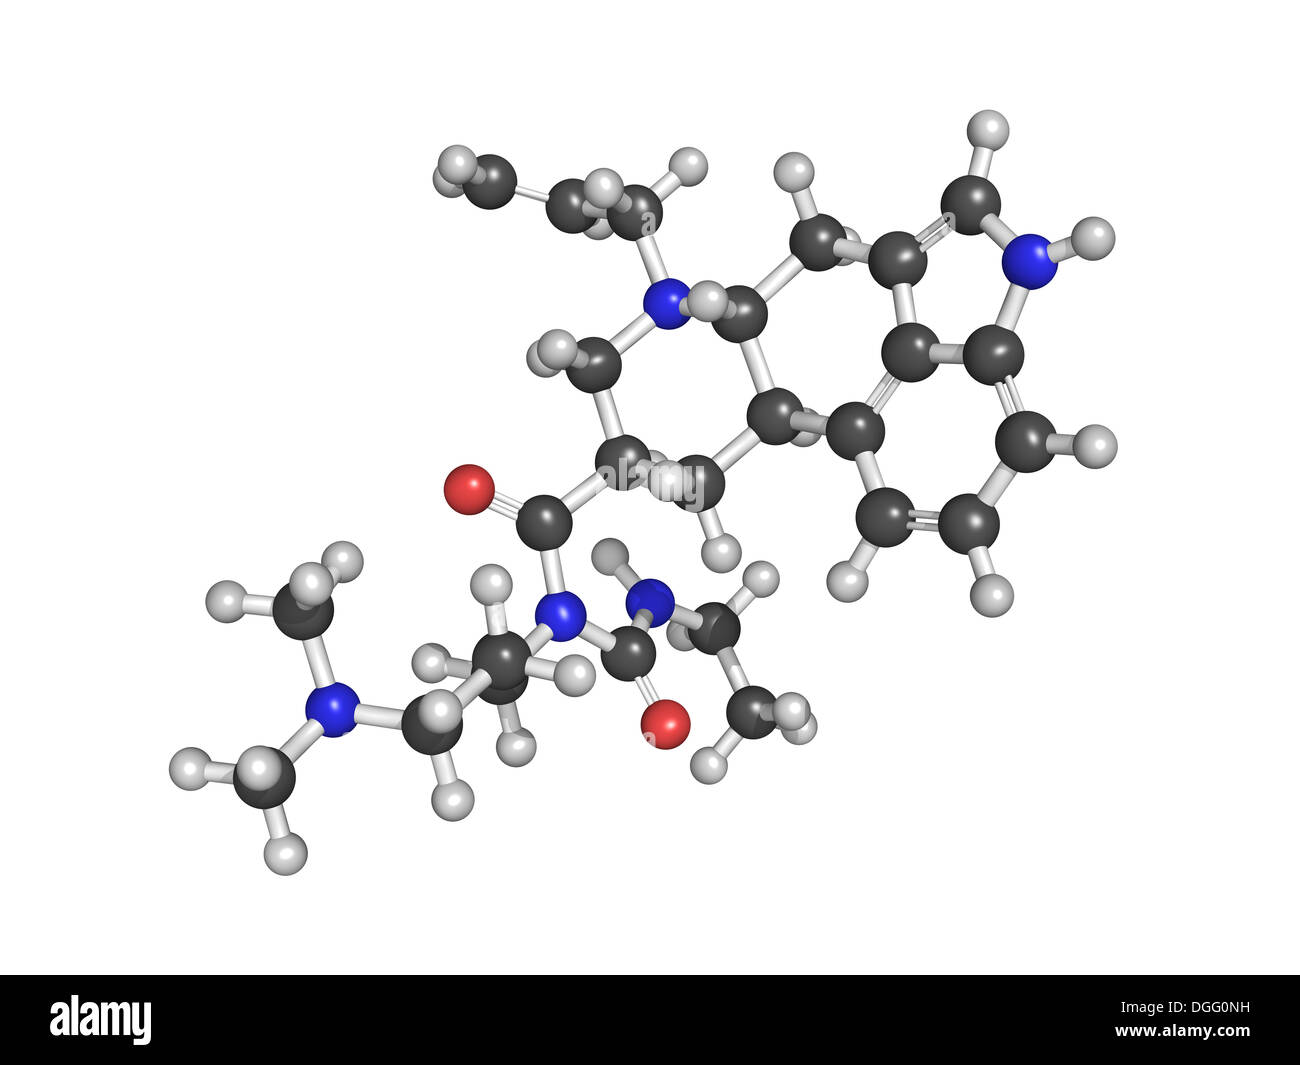 Cabergolin Droge, chemische Struktur. In Parkinson und anderen Erkrankungen verwendet. Stockfoto